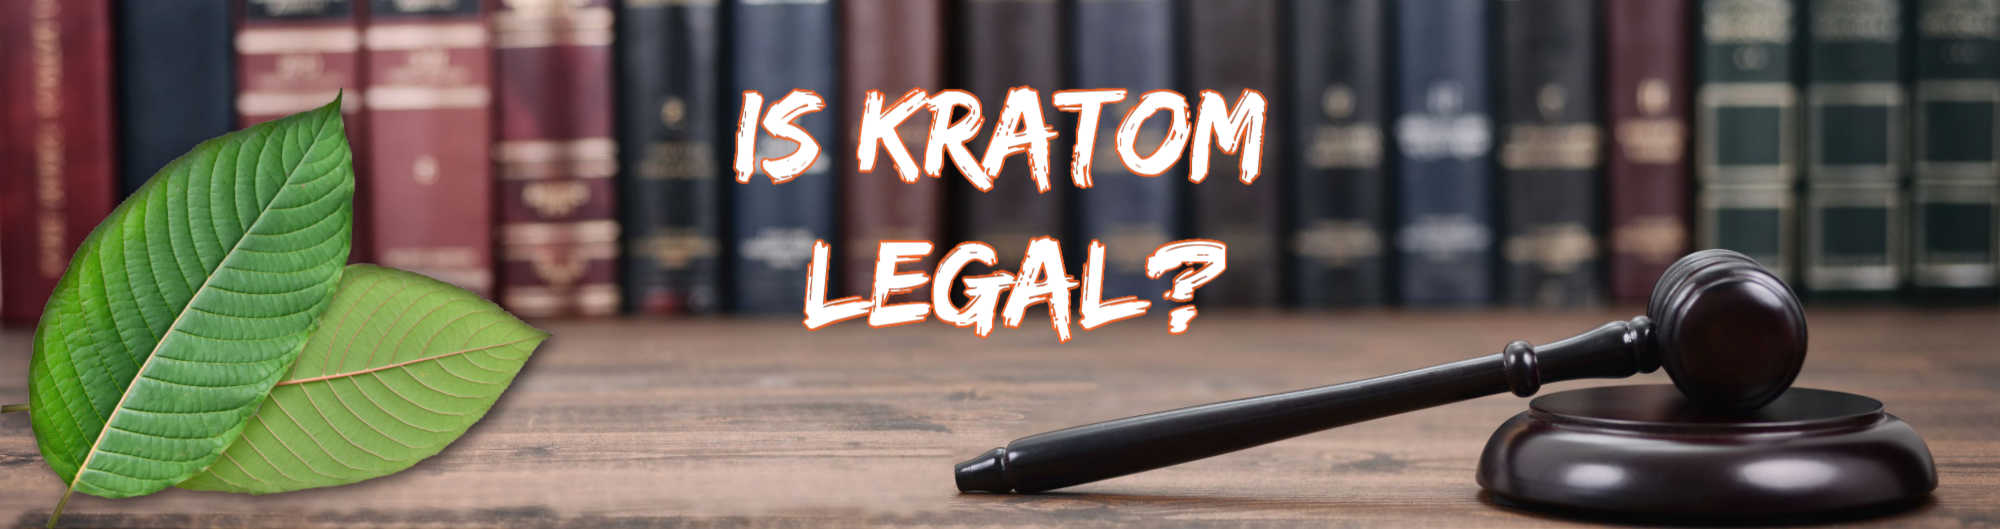 image of is kratom legal